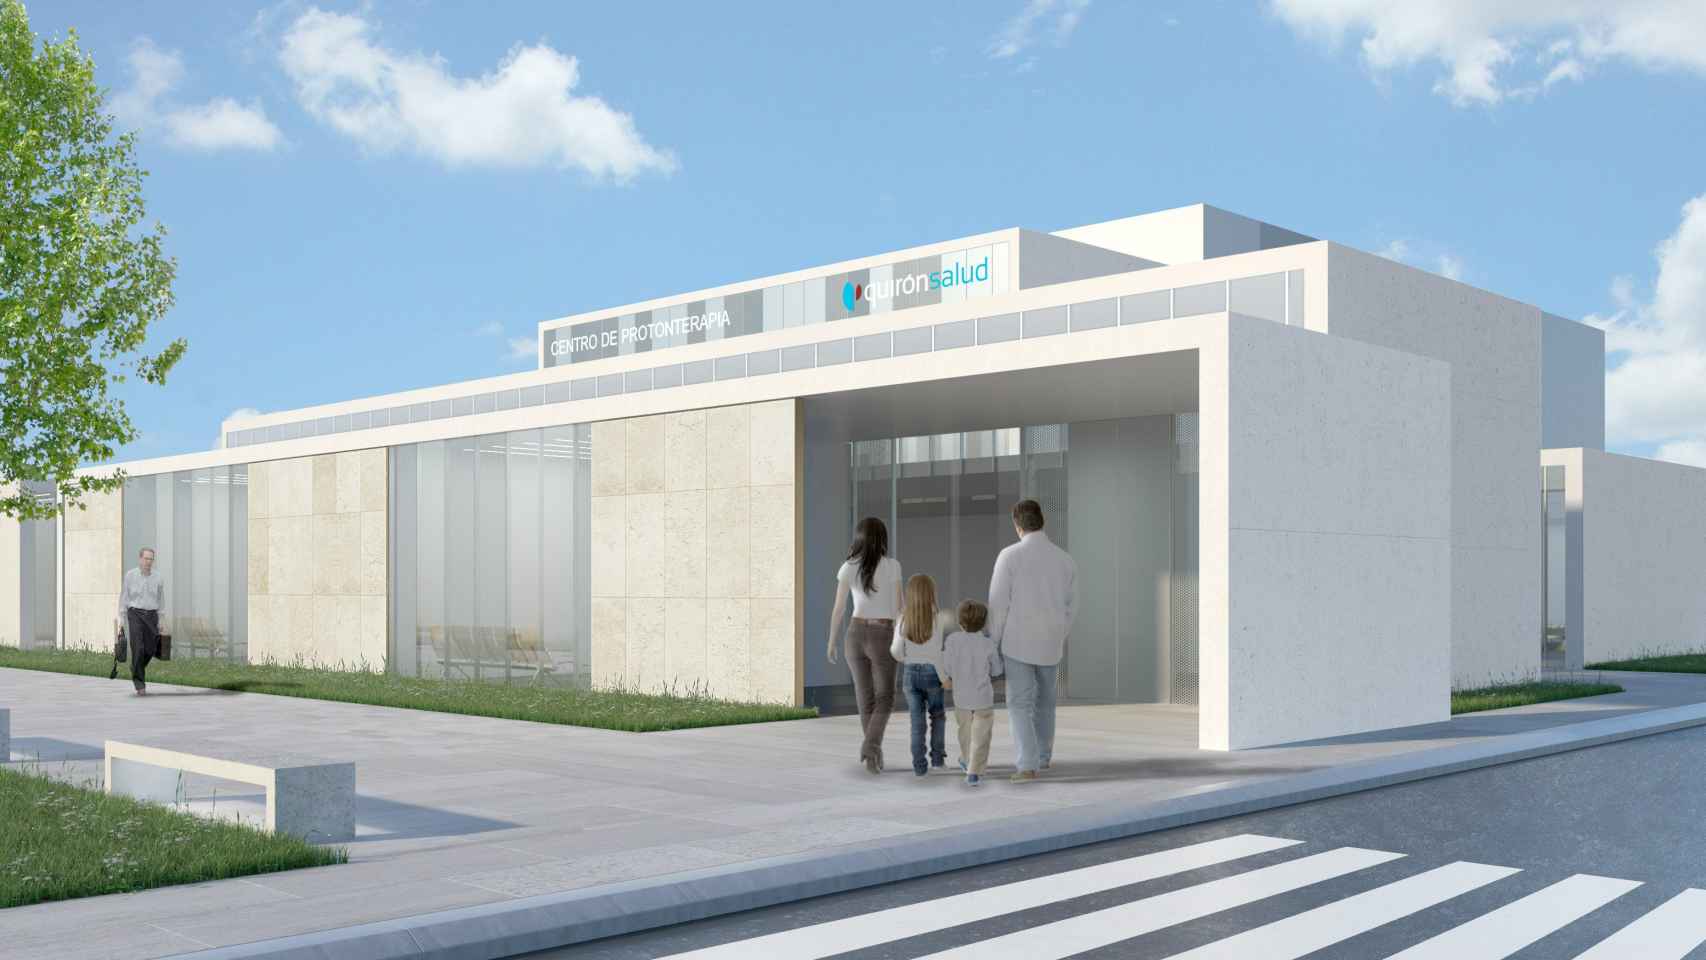 Maqueta de las instalaciones del centro de QuirónSalud en Madrid